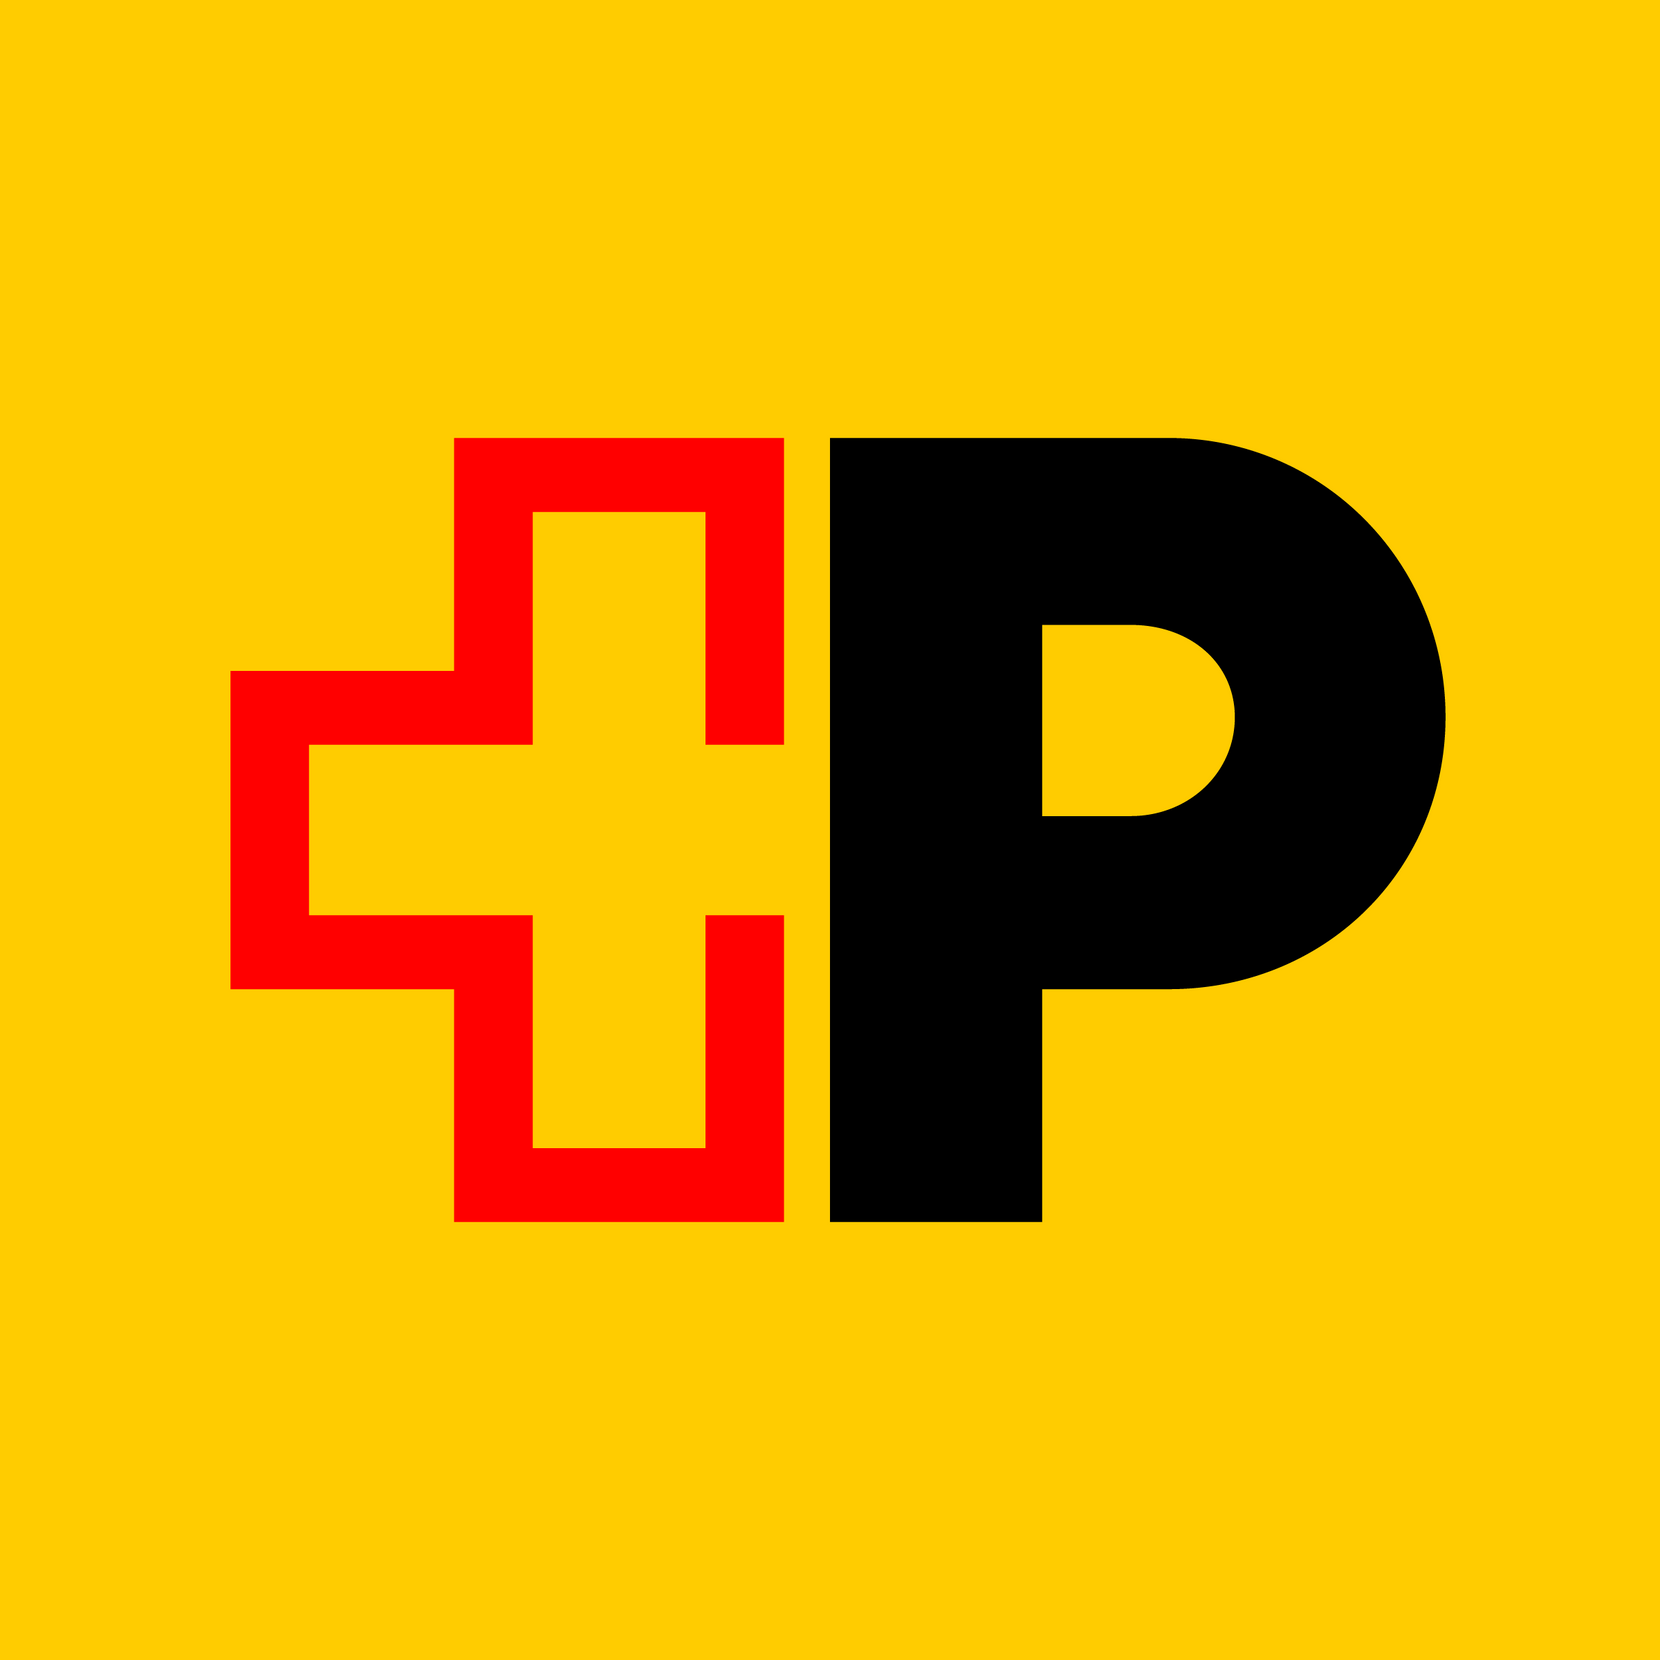 Gelbe Fläche, ein schwarzes «P» und ein dreiviertel Schweizer Kreuz in Rot.